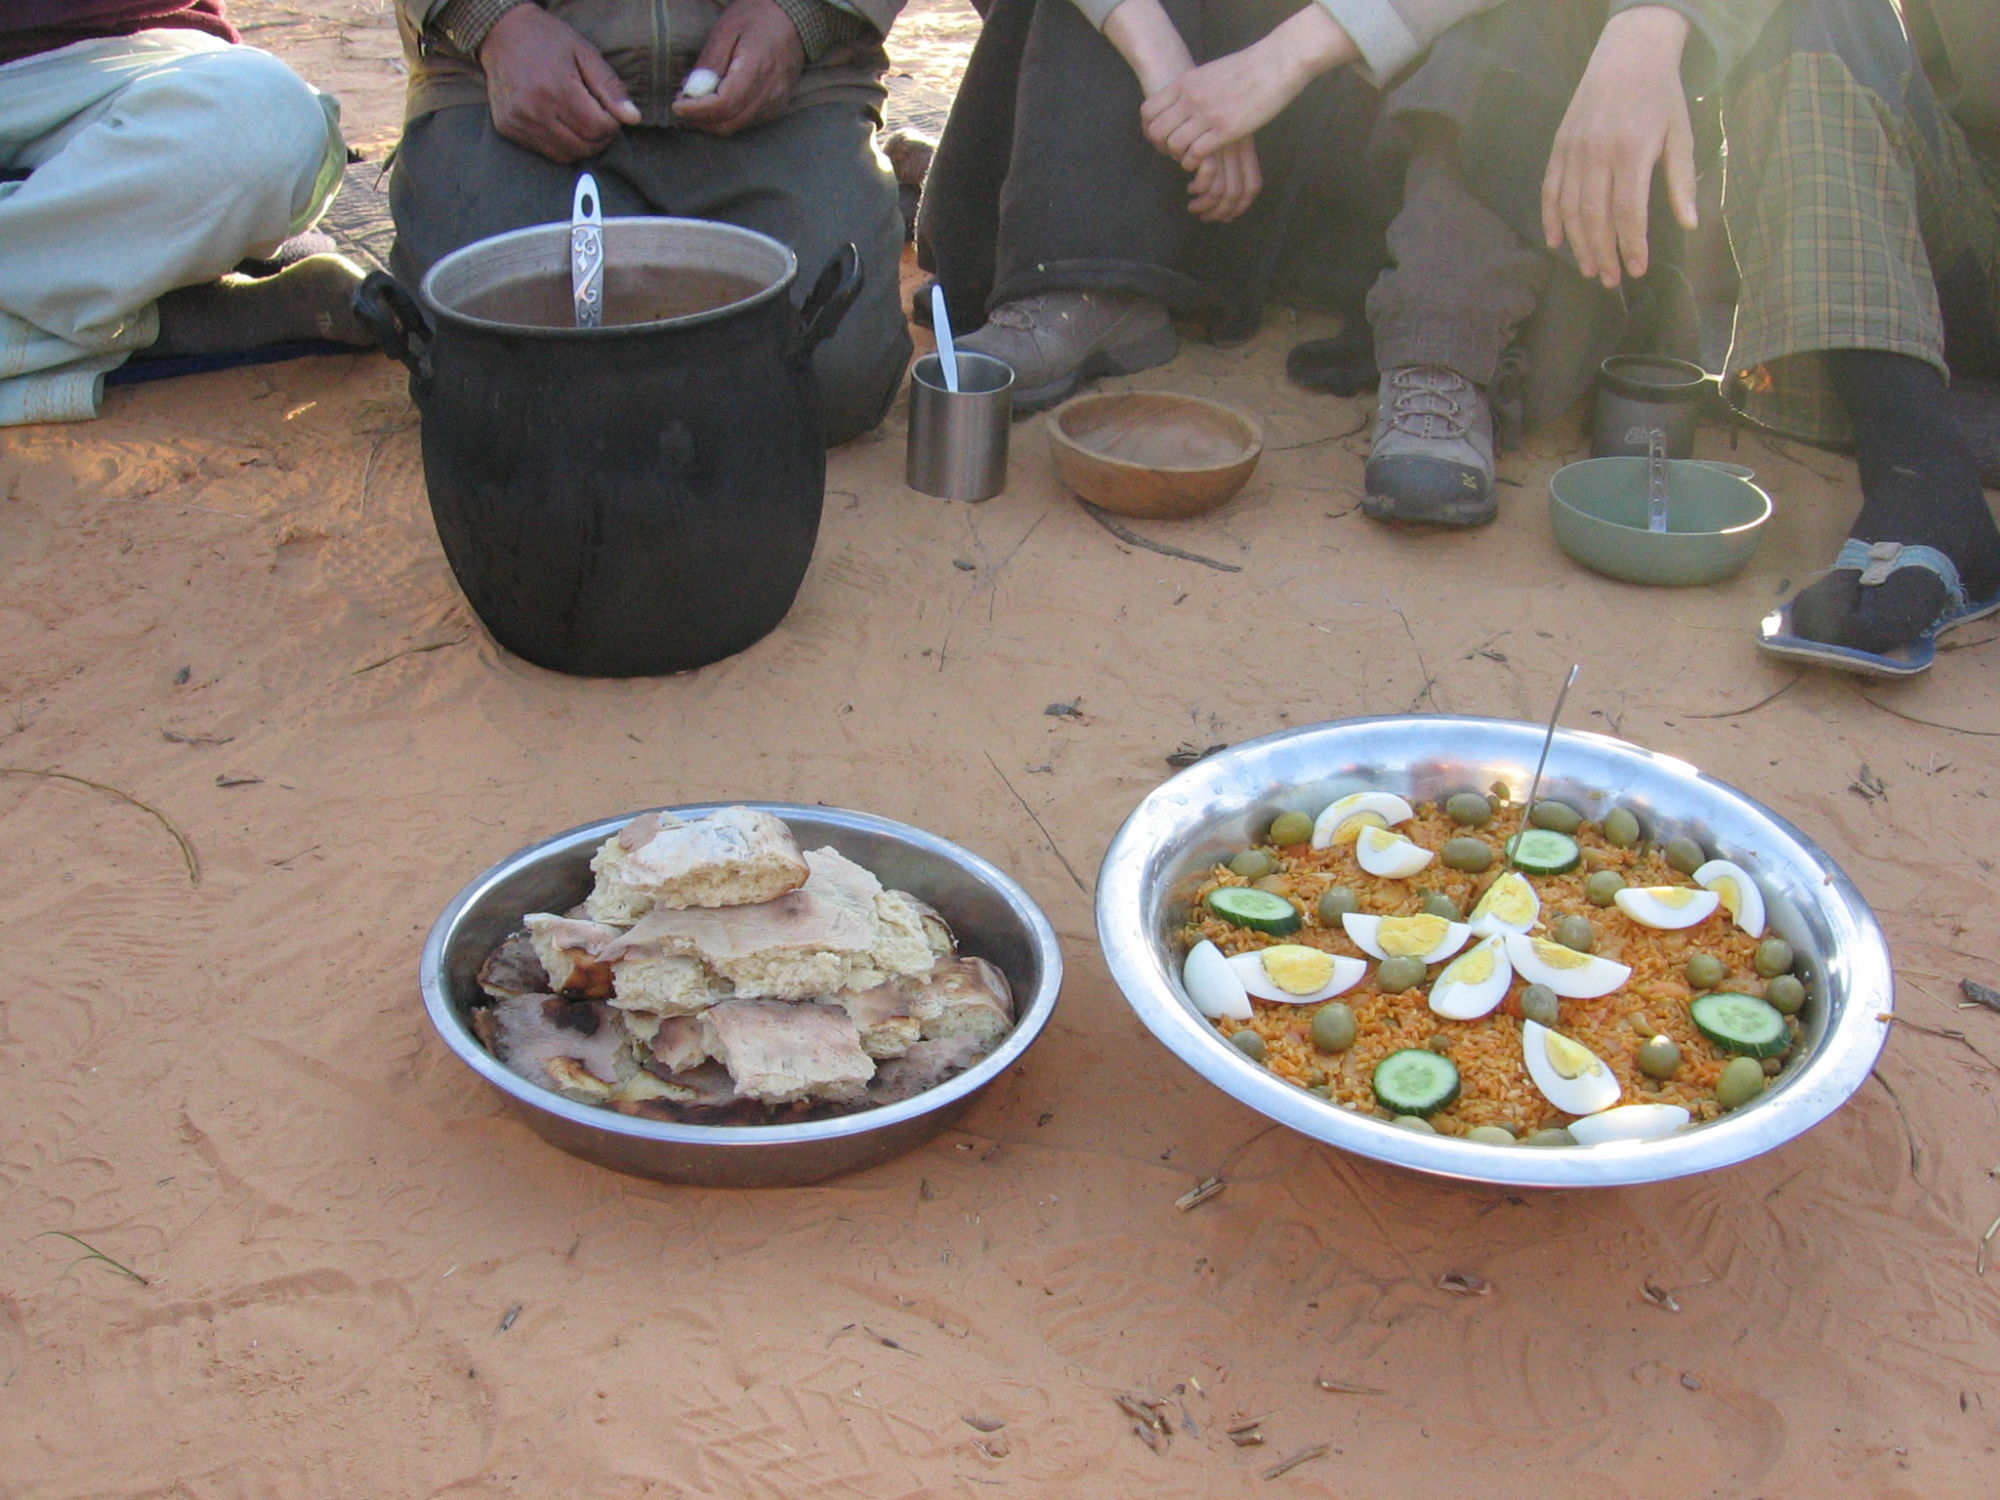 společné jídlo - vision quest na Sahaře 2012